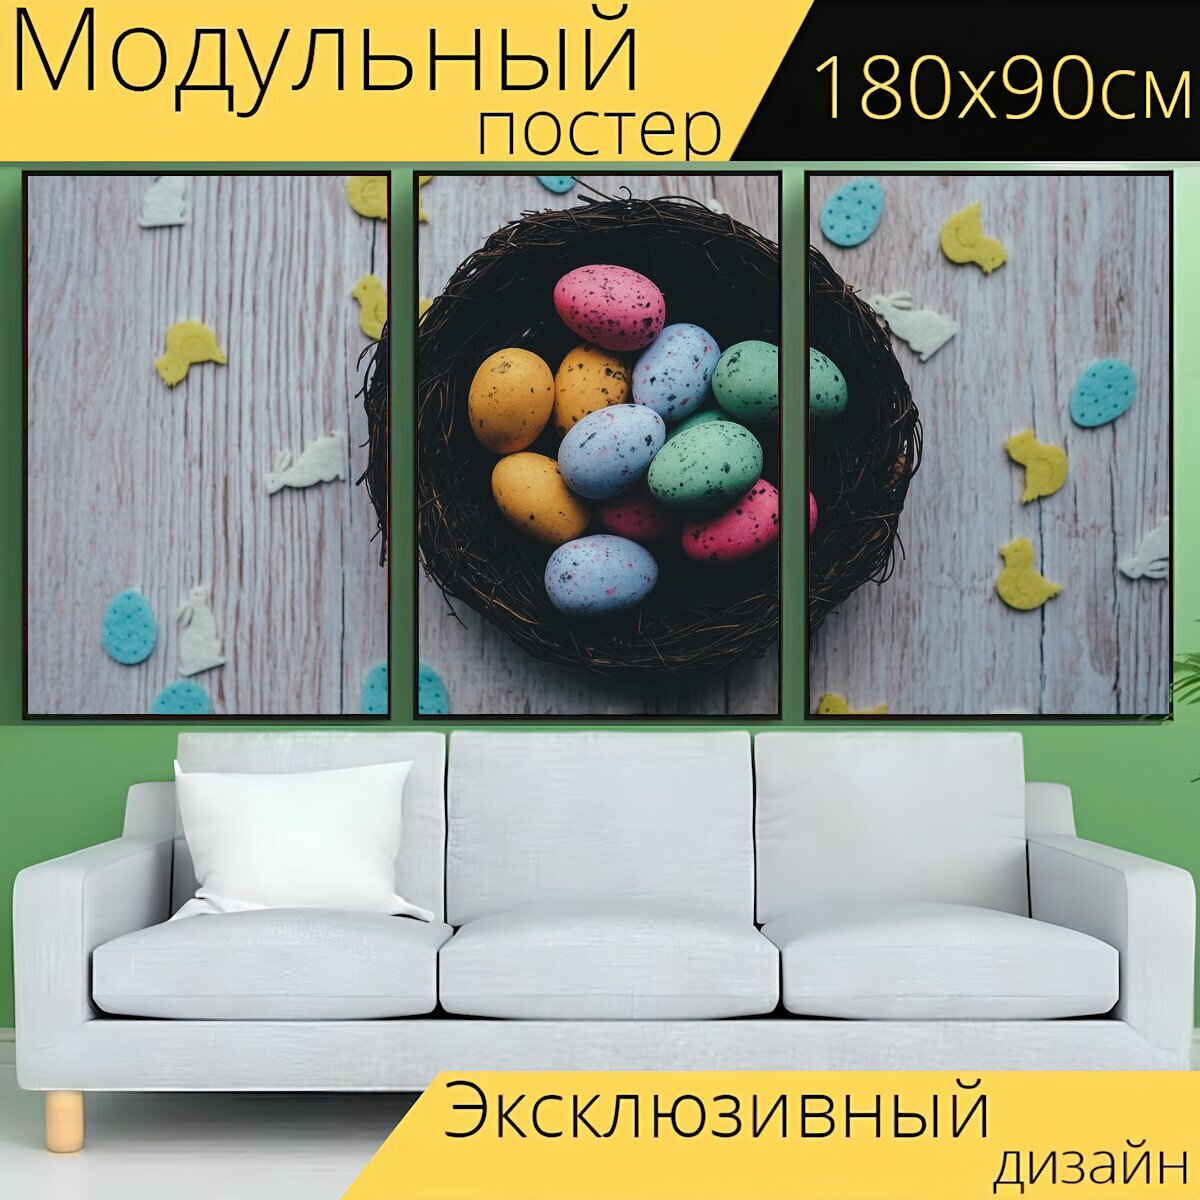 Модульный постер "Пасхальный, яйца, корзина" 180 x 90 см. для интерьера